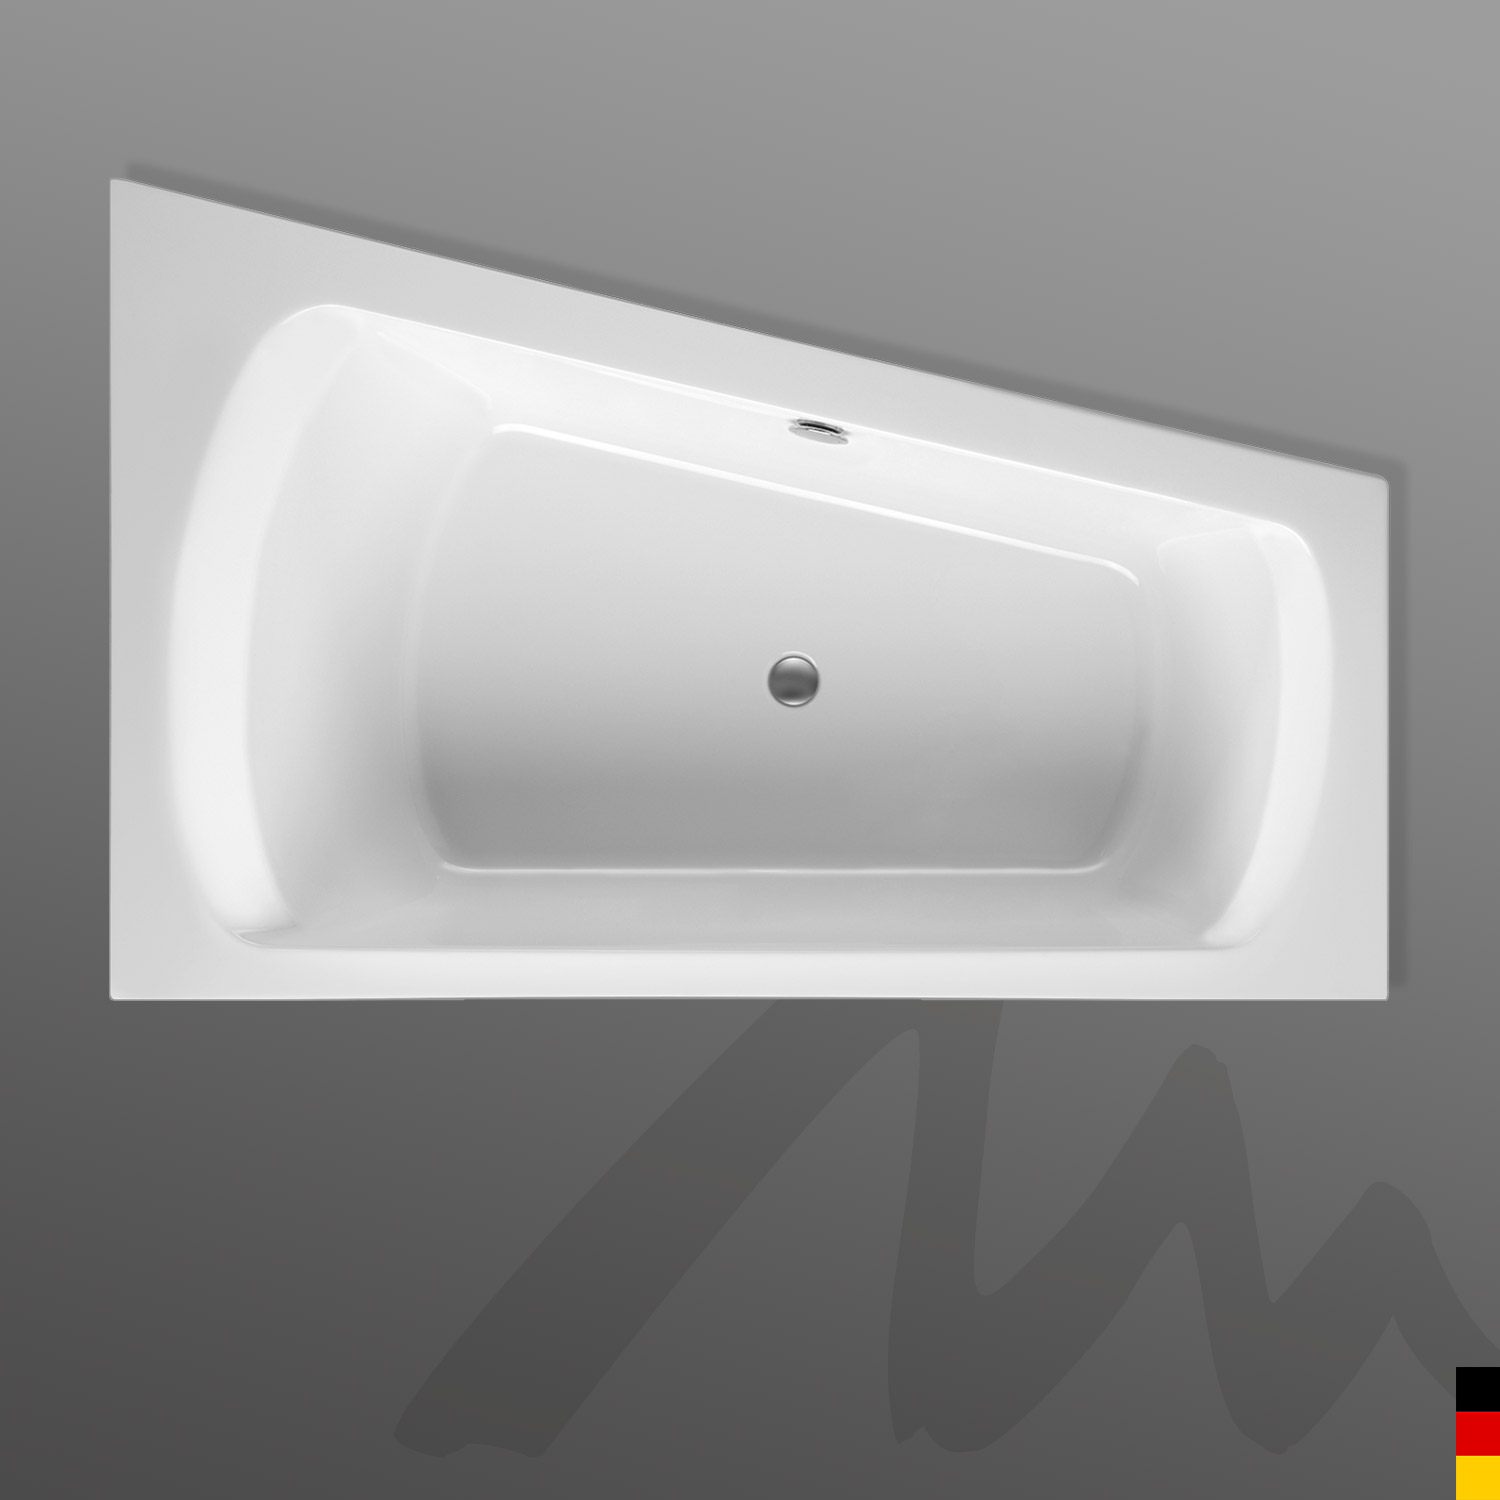 Mauersberger Badewanne Eckwanne Senecio 170/105 Ausführung links  170x105/65x47  Farbe:weiß